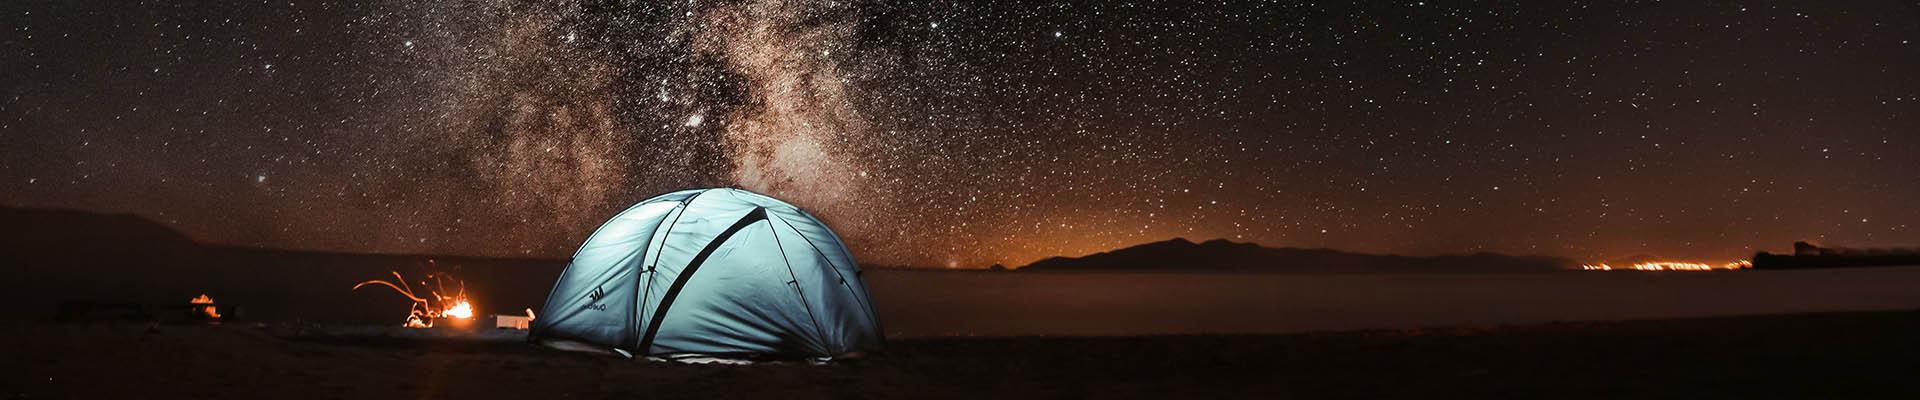 在繁星点点的夜晚，在沙漠里搭起一顶蓝色的帐篷